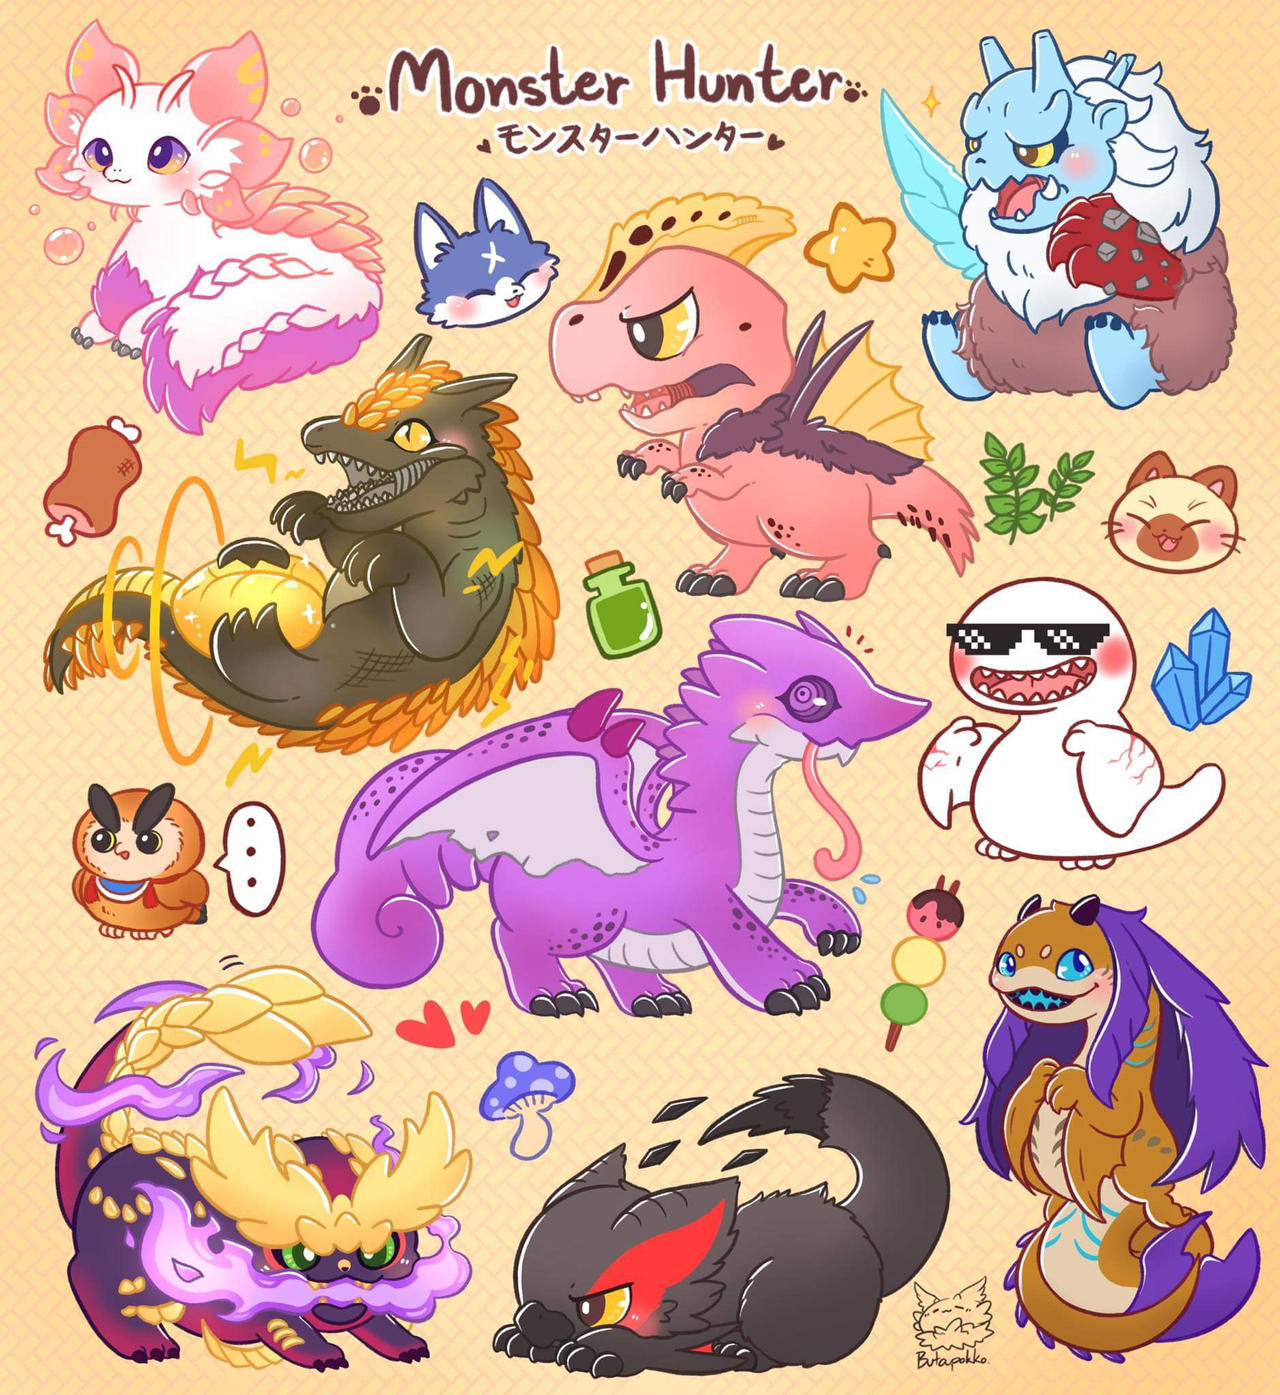 Monster Hunter chibi monster by Butapokko on DeviantArt